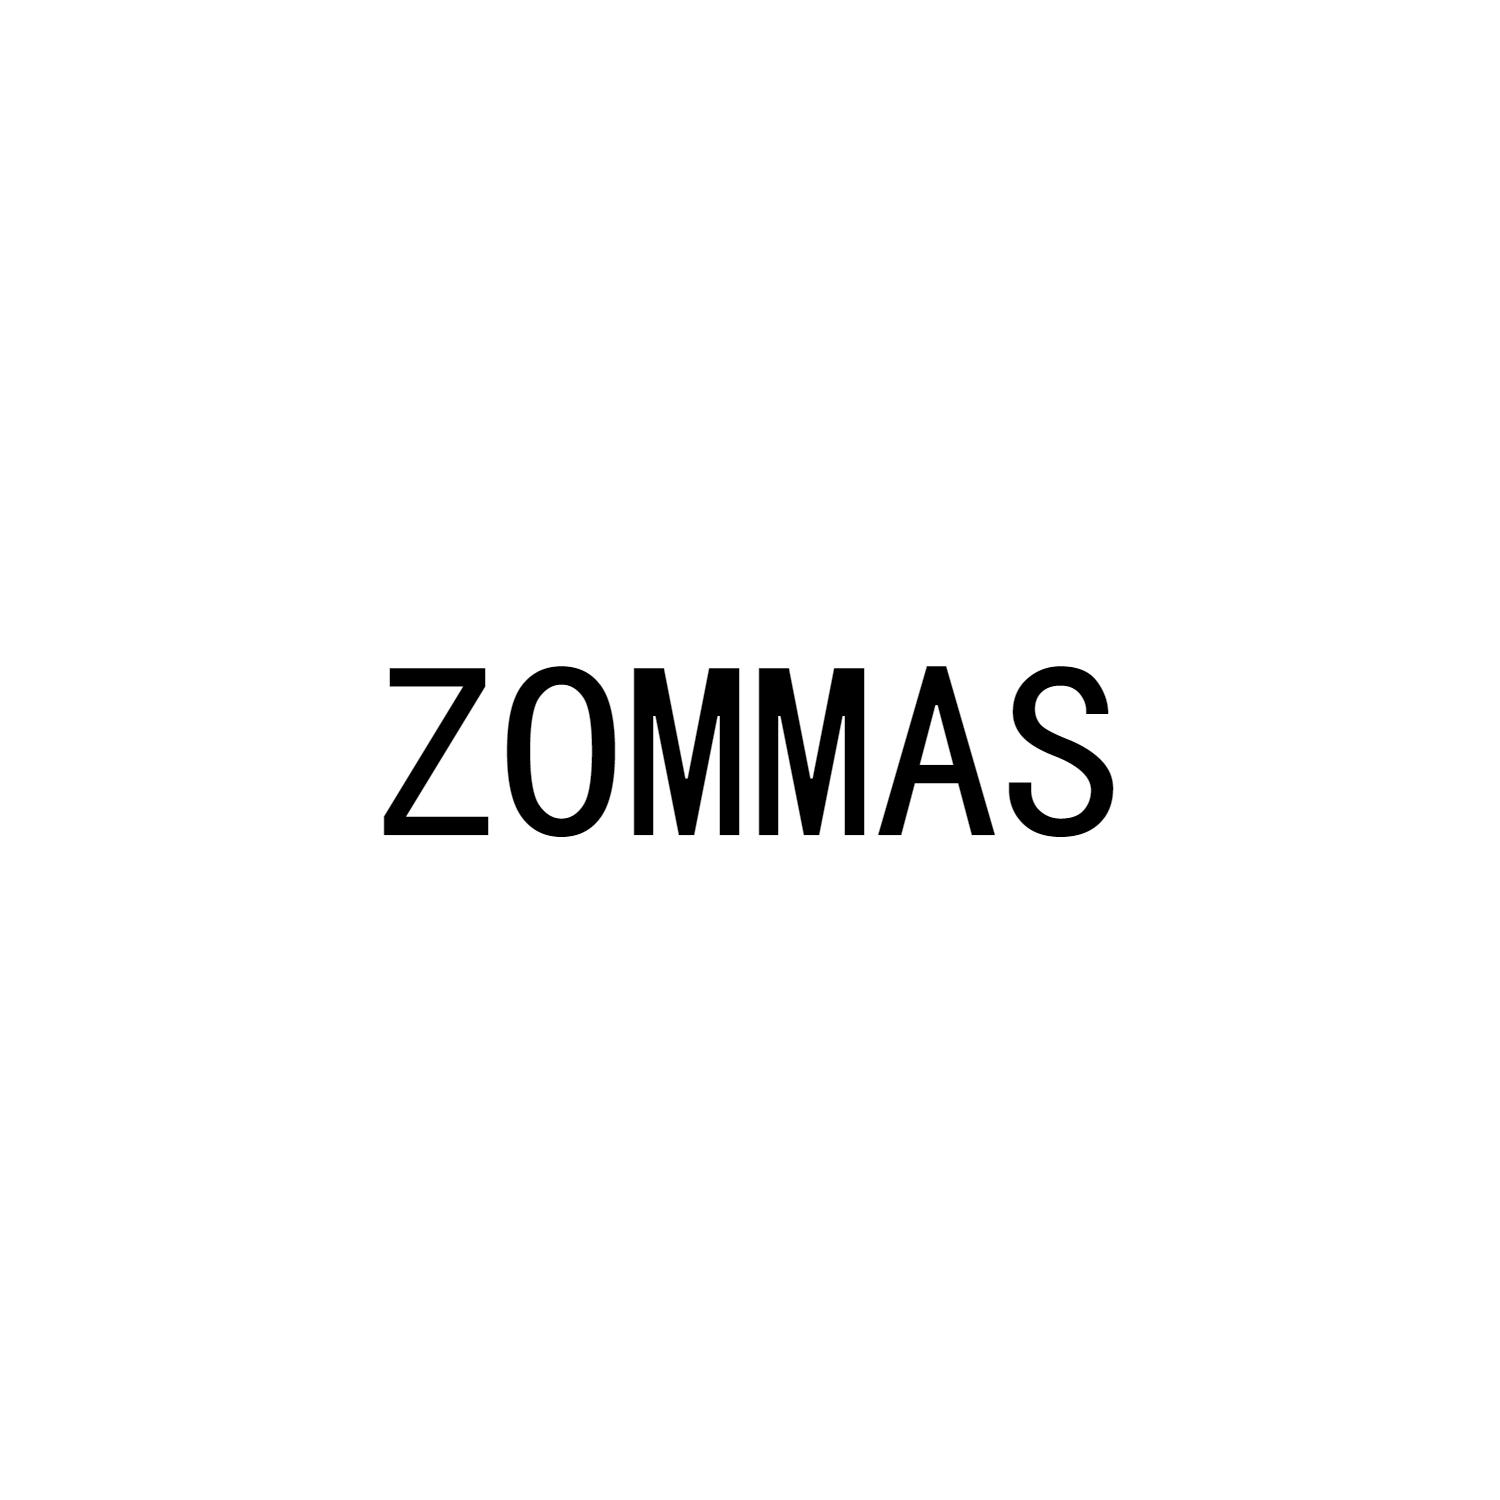 ZOMMAS